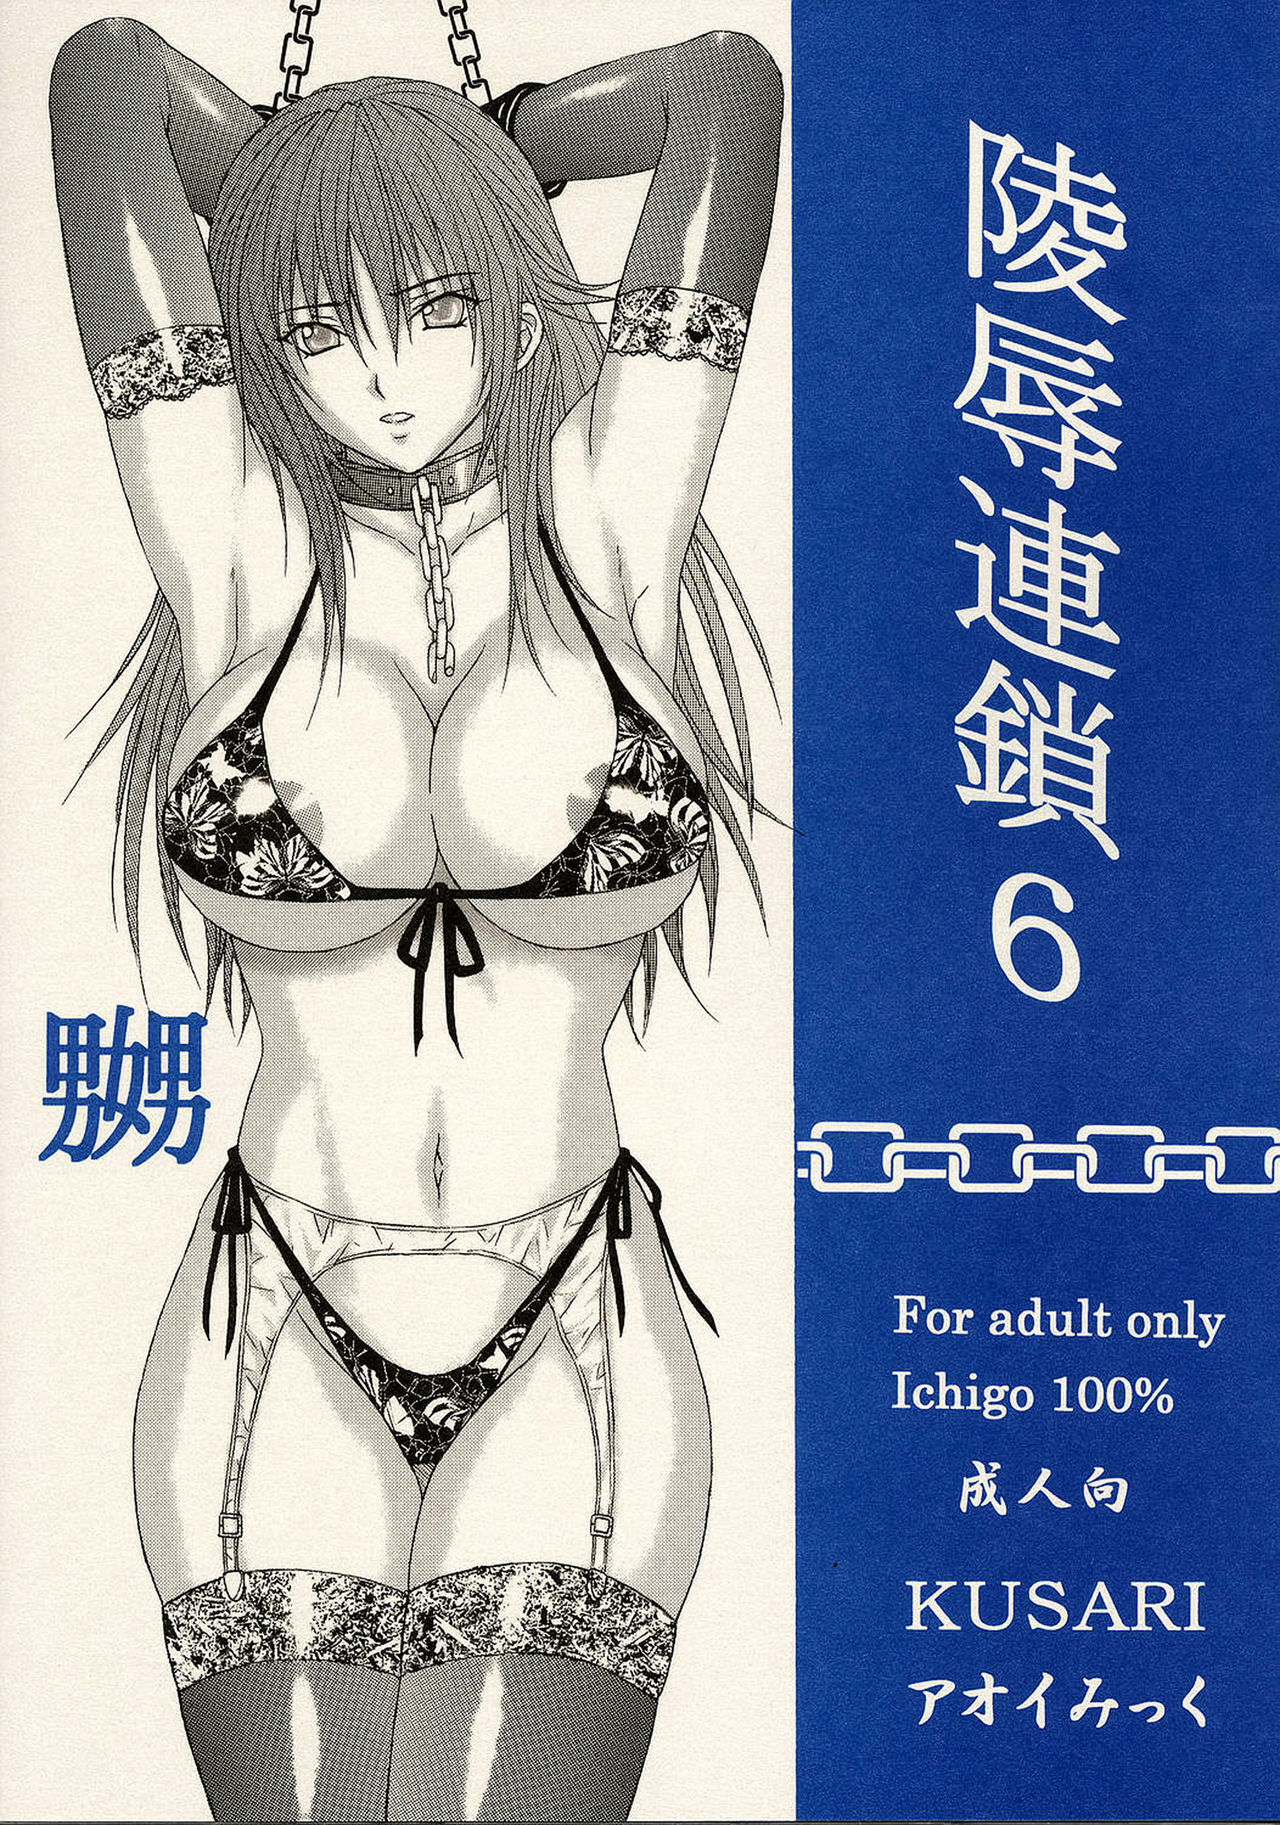 [KUSARI (Aoi Mikku)] Ryoujoku Rensa 06 (Ichigo 100%) [English] page 35 full